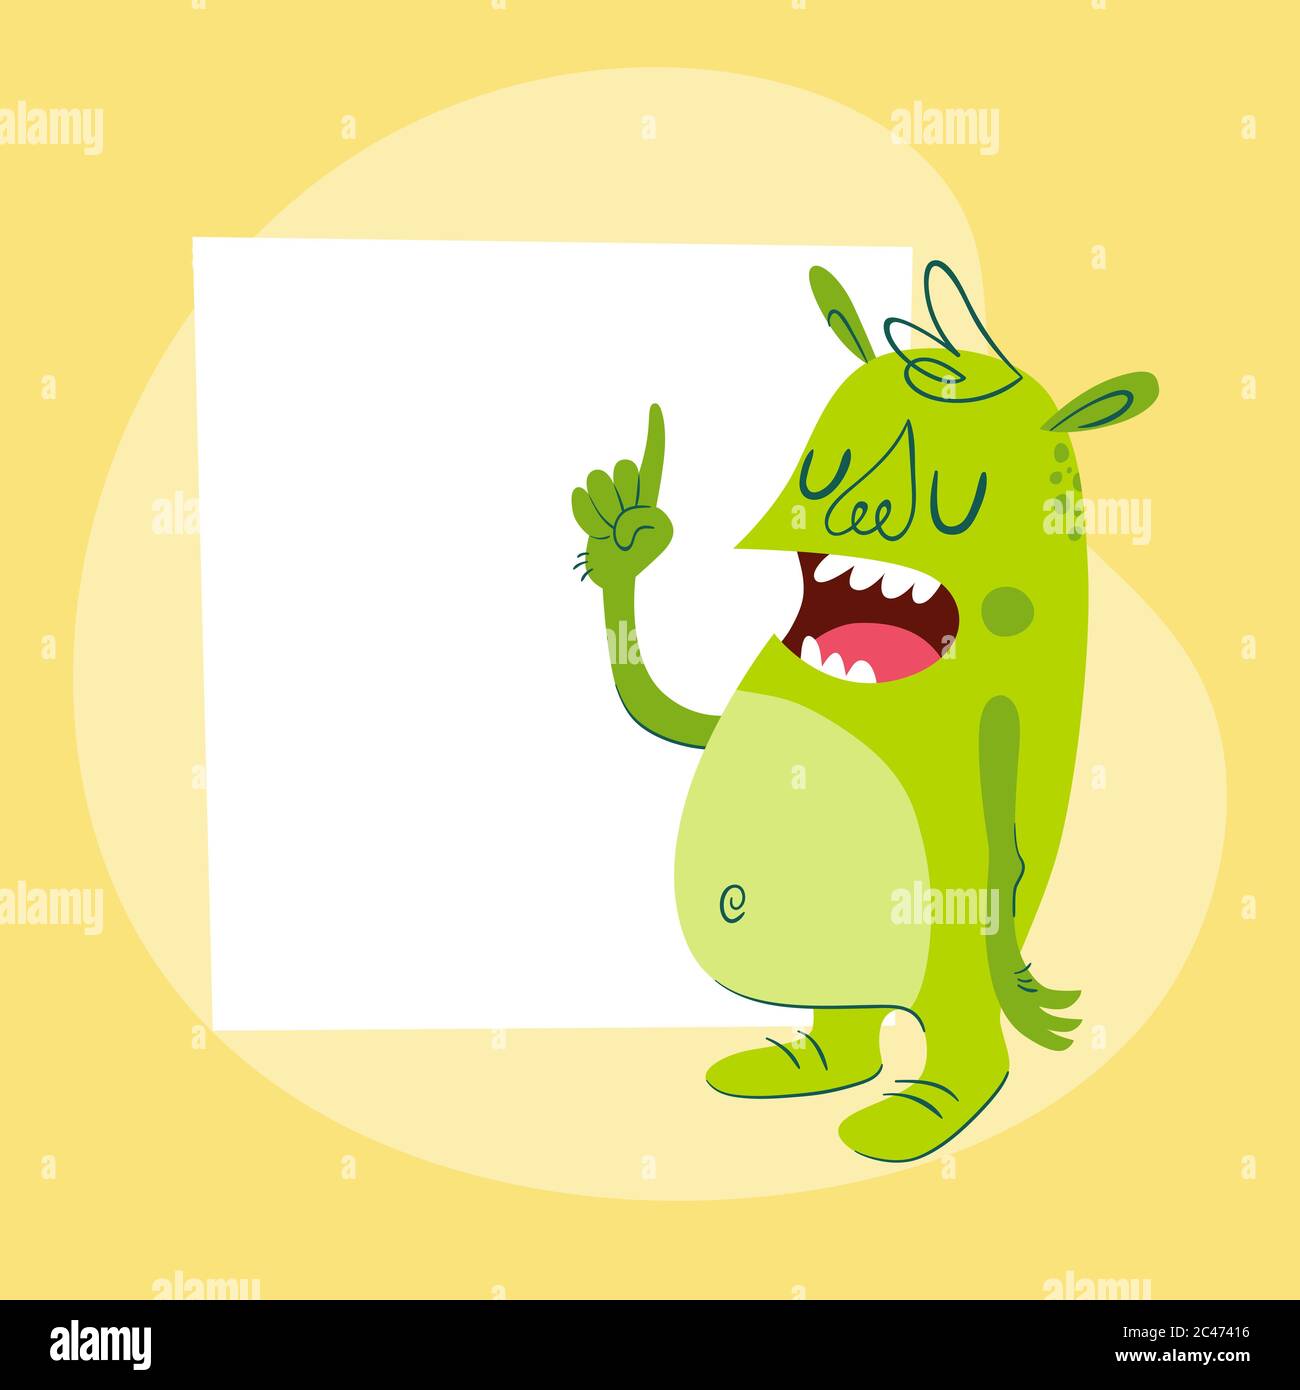 Lustiges Monster mit einer leeren Karte hinter. Retro Cartoon-Stil Charakter in grüner Farbe, gibt eine Lektion oder Lehre. Vektorgrafik, perfekt für Stock Vektor